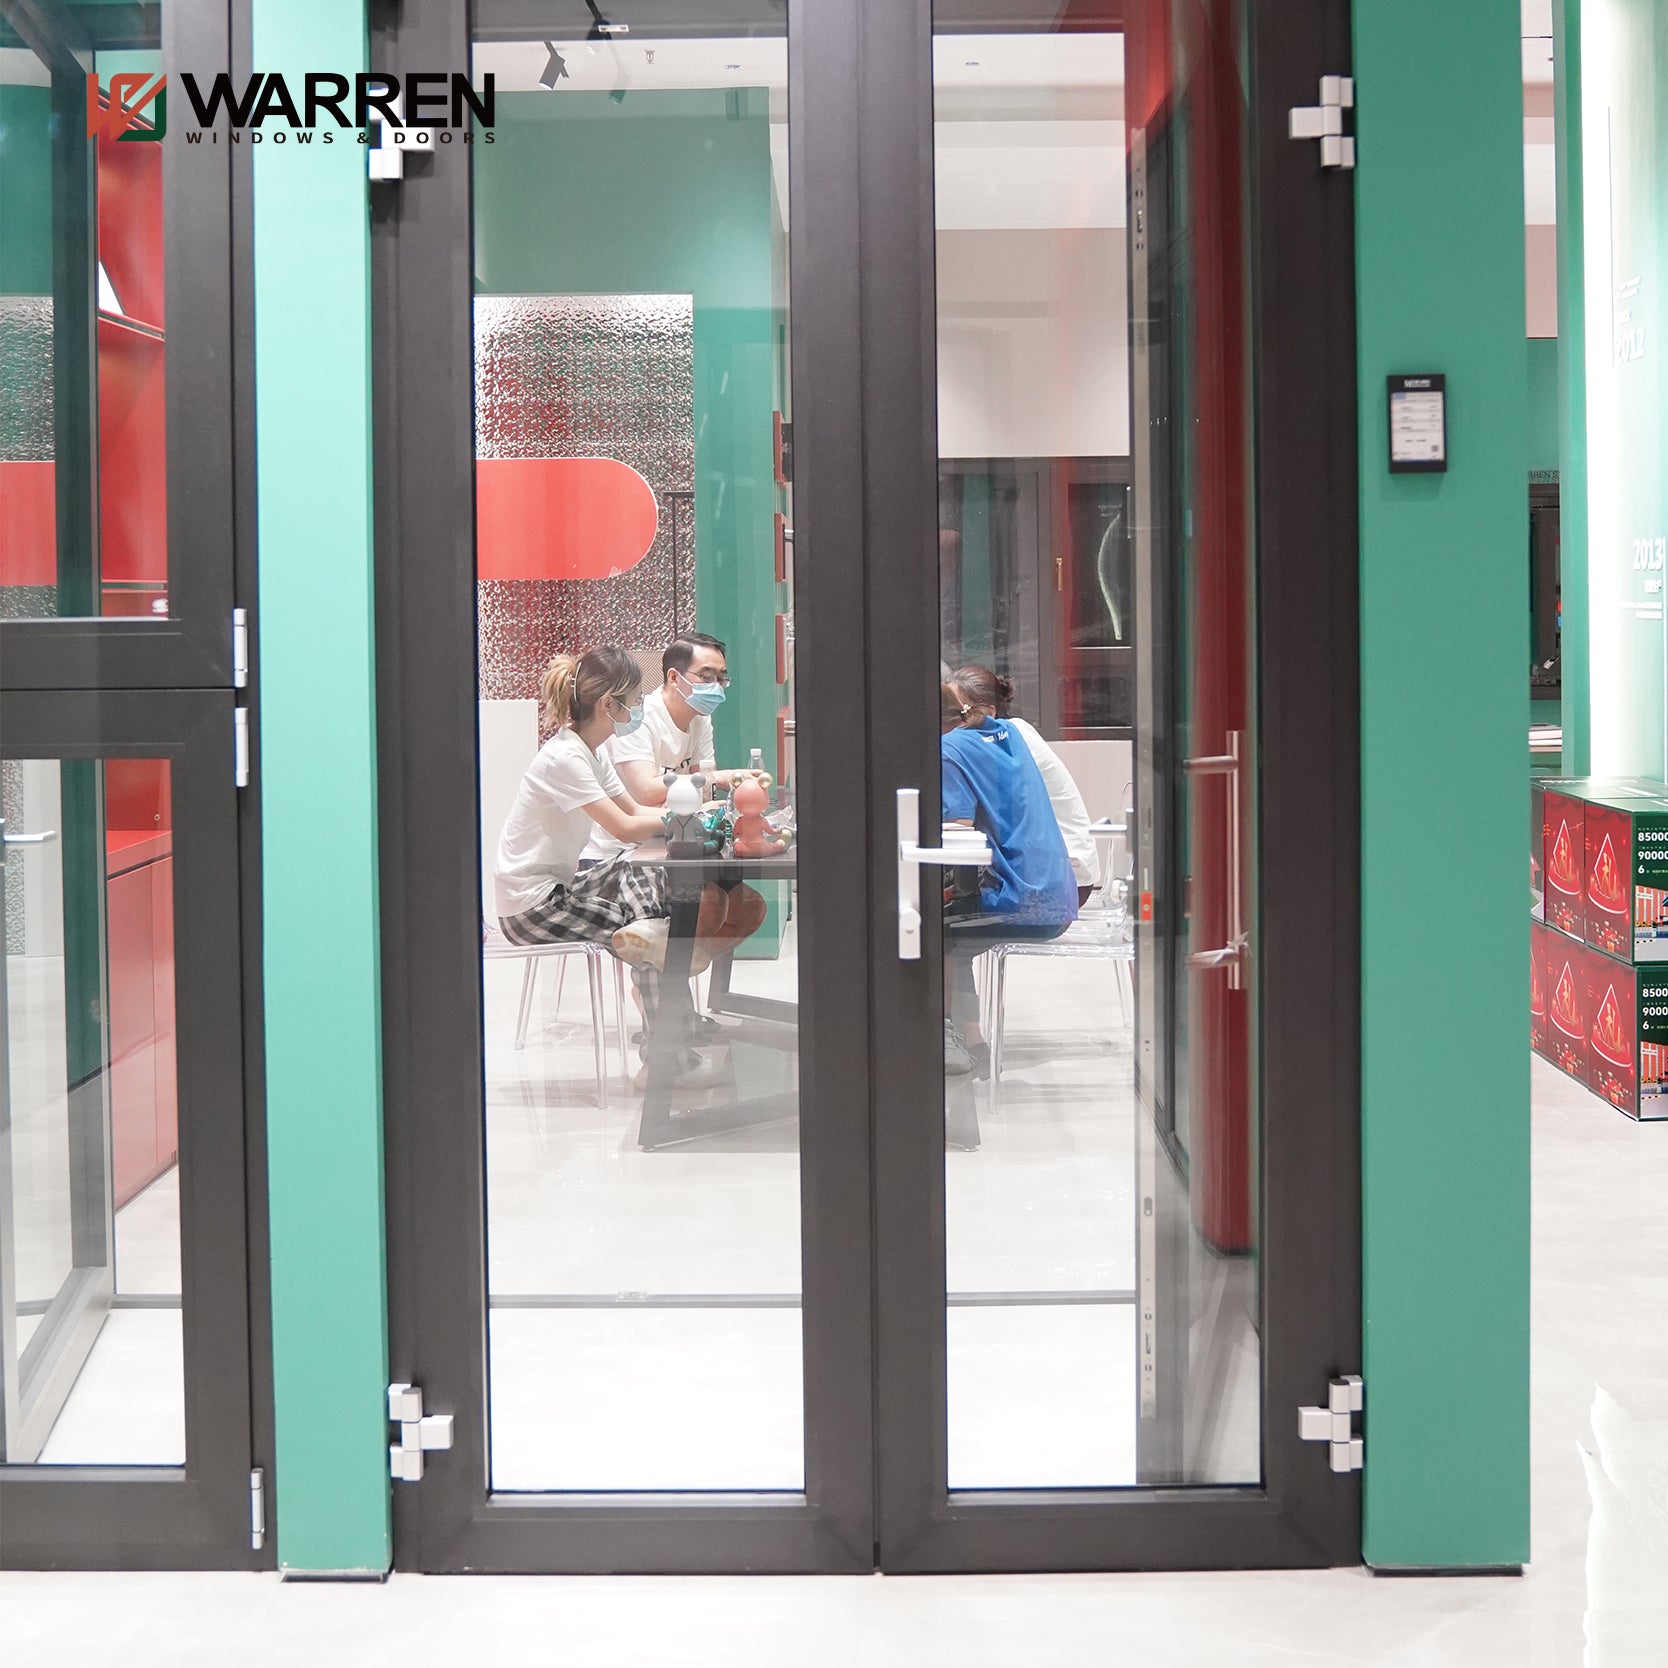 Warren Custom  Factory Direct Cheap Price Double Open Glass Door Exterior French Doors Aluminum Casement Doors